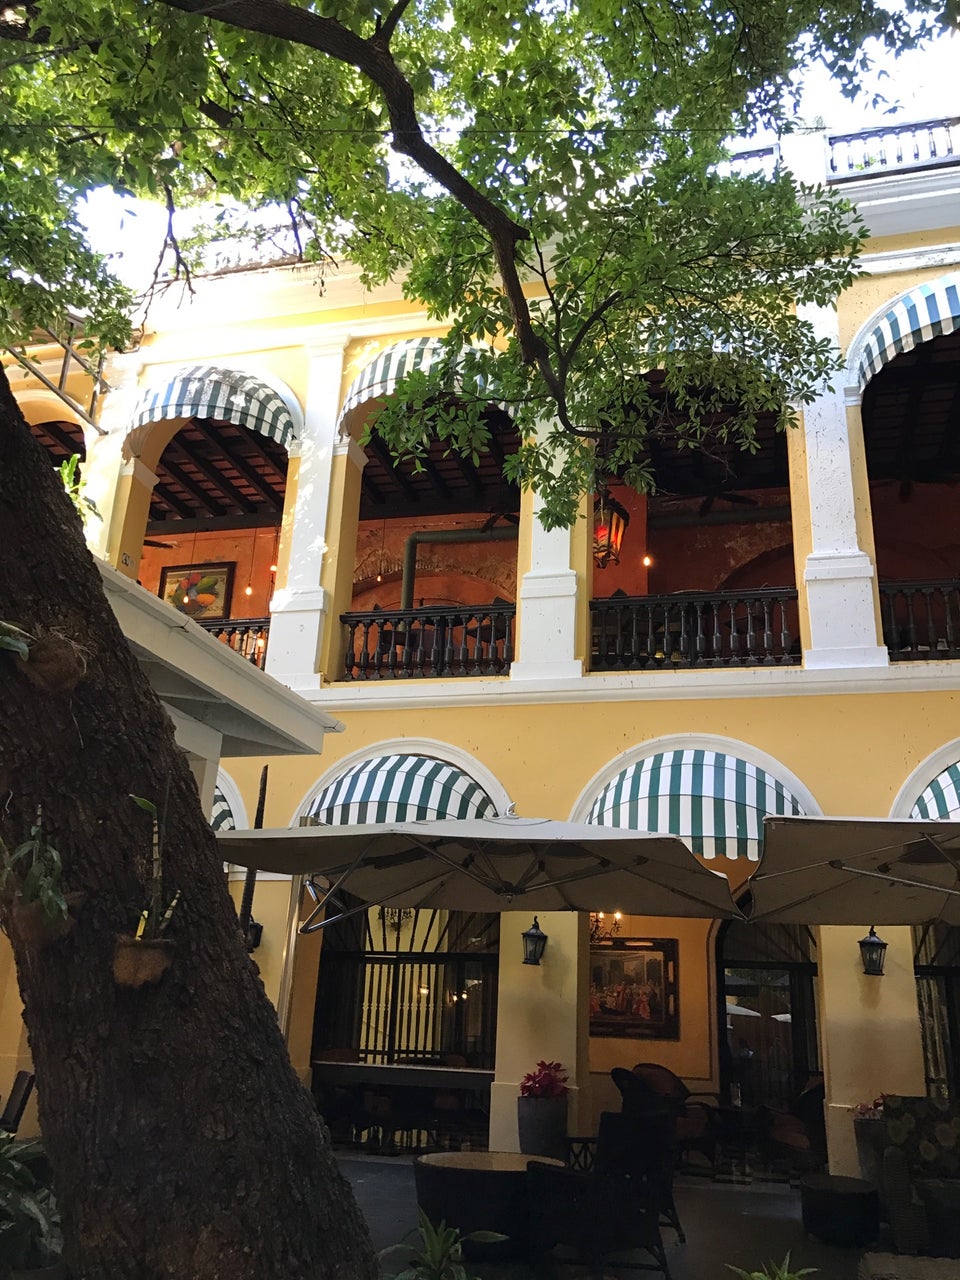 Photo of Hotel El Convento